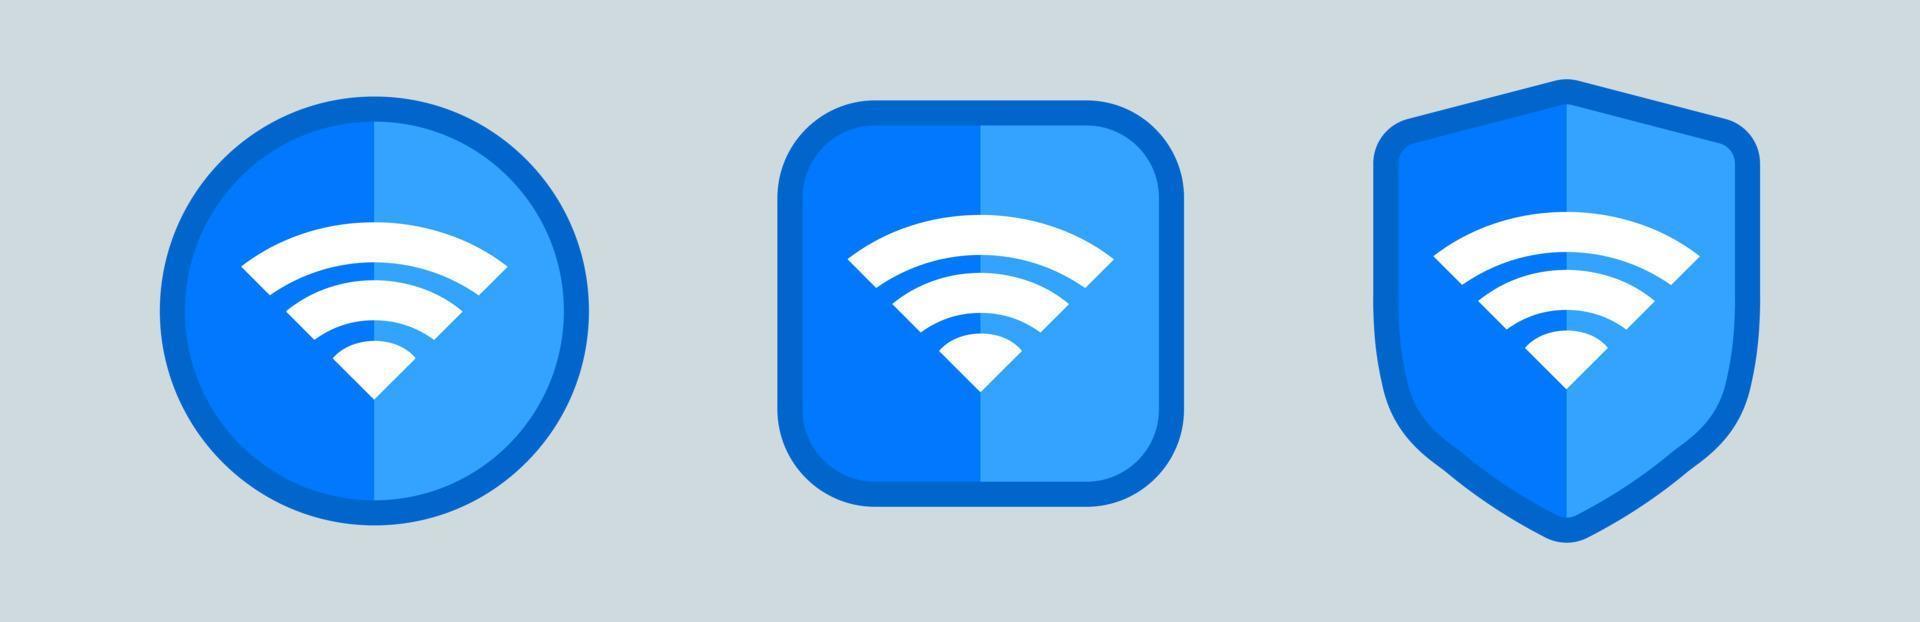 icono inalámbrico y wifi o señal para acceso remoto a Internet. conjunto de iconos wifi azul diferente. vector